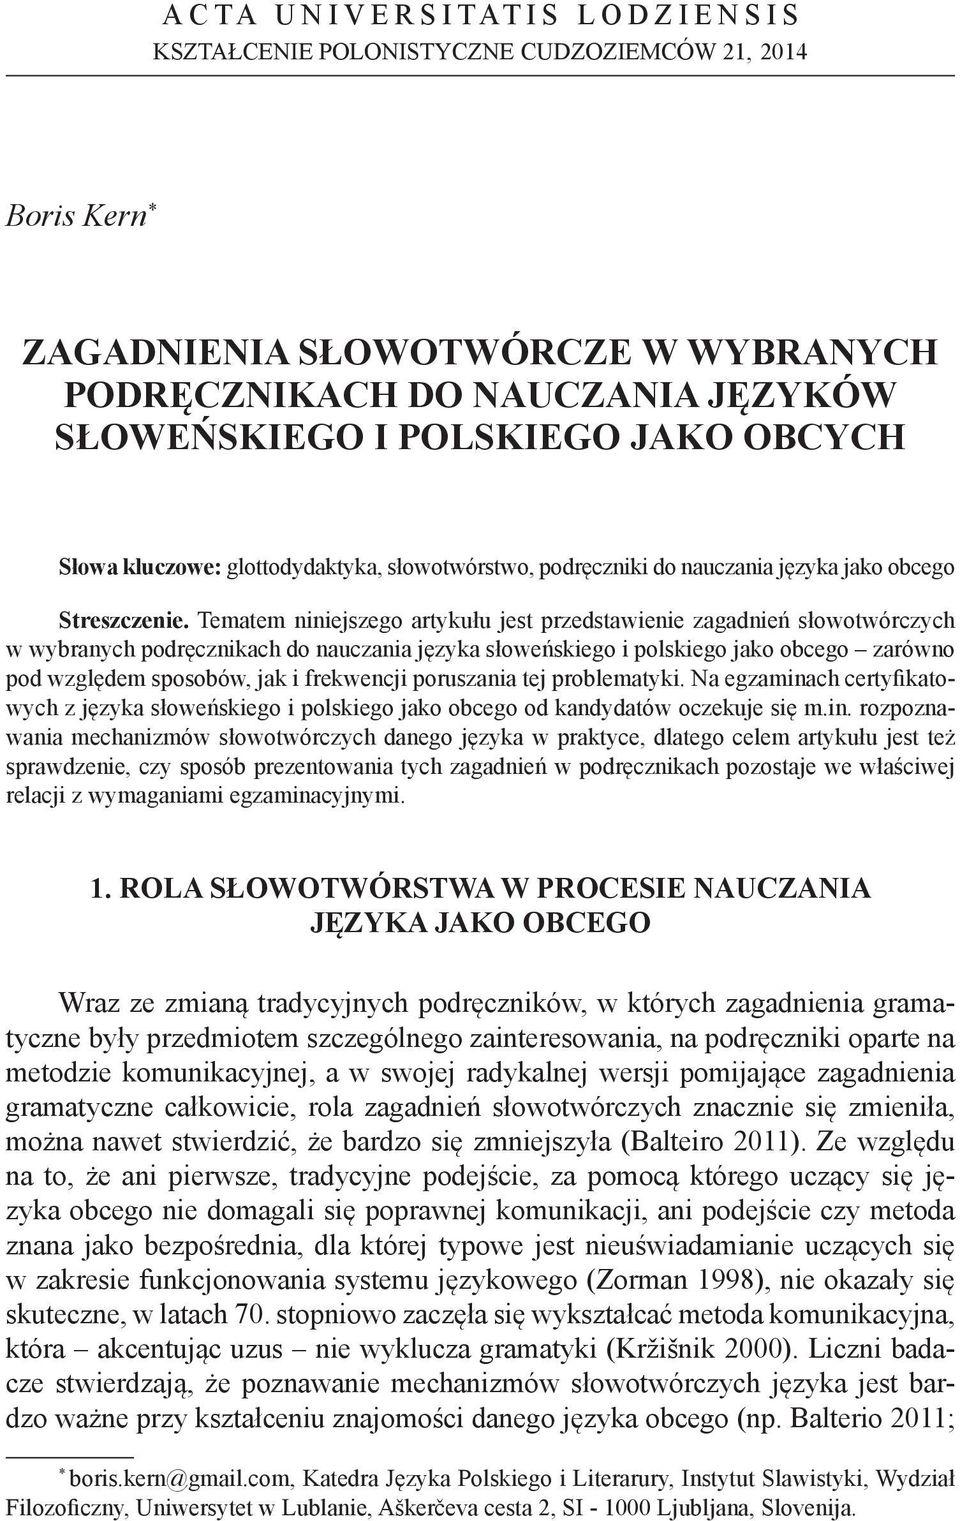 Tematem niniejszego artykułu jest przedstawienie zagadnień słowotwórczych w wybranych podręcznikach do nauczania języka słoweńskiego i polskiego jako obcego zarówno pod względem sposobów, jak i